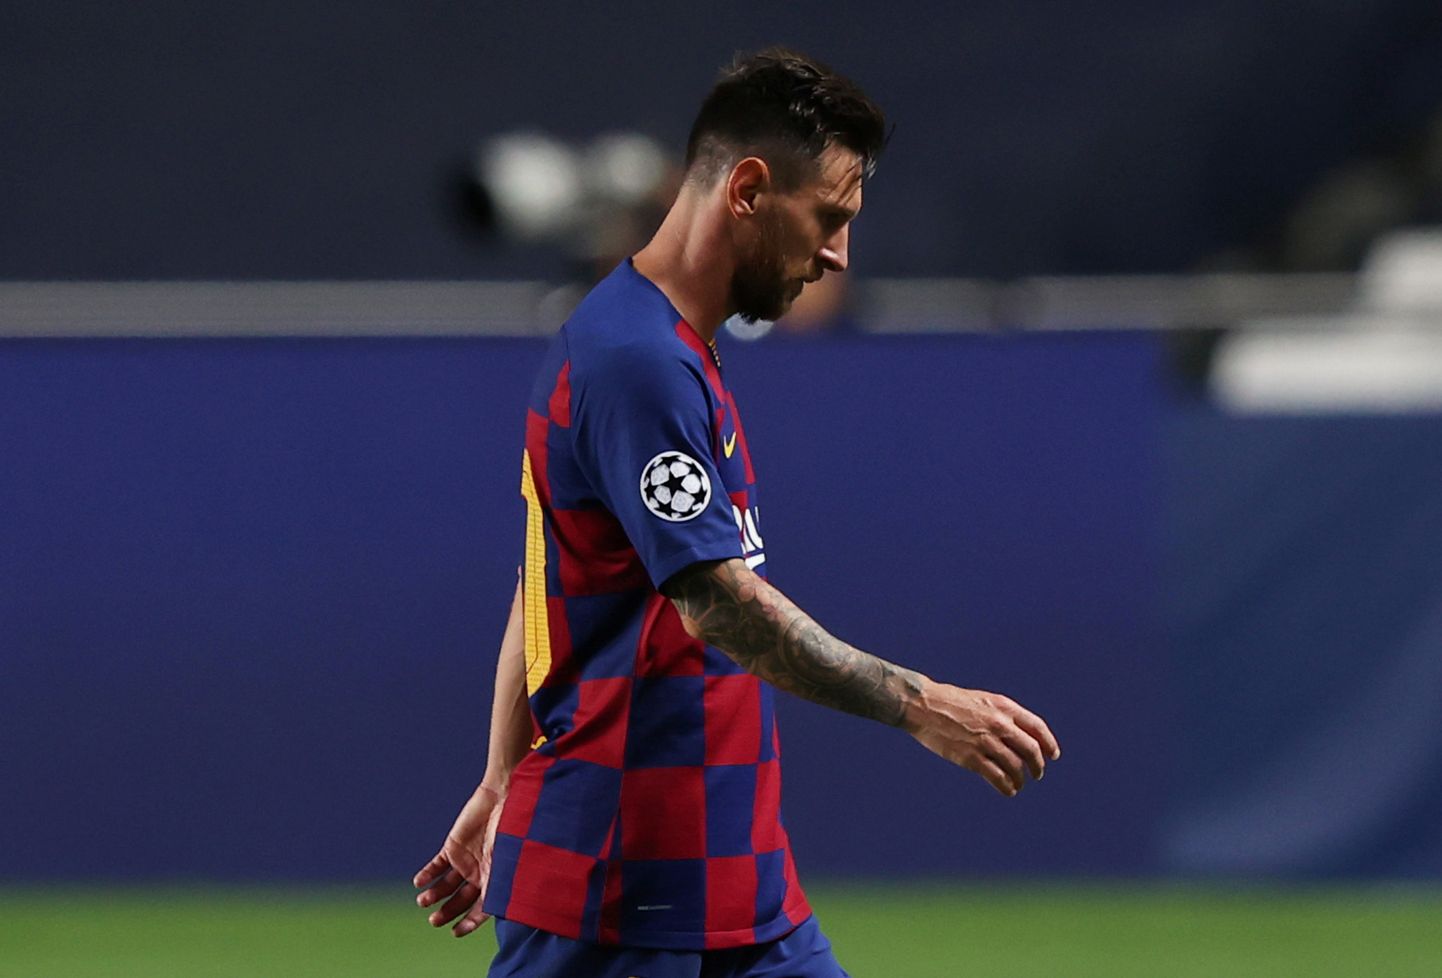 Kus jätkub Lionel Messi karjäär?